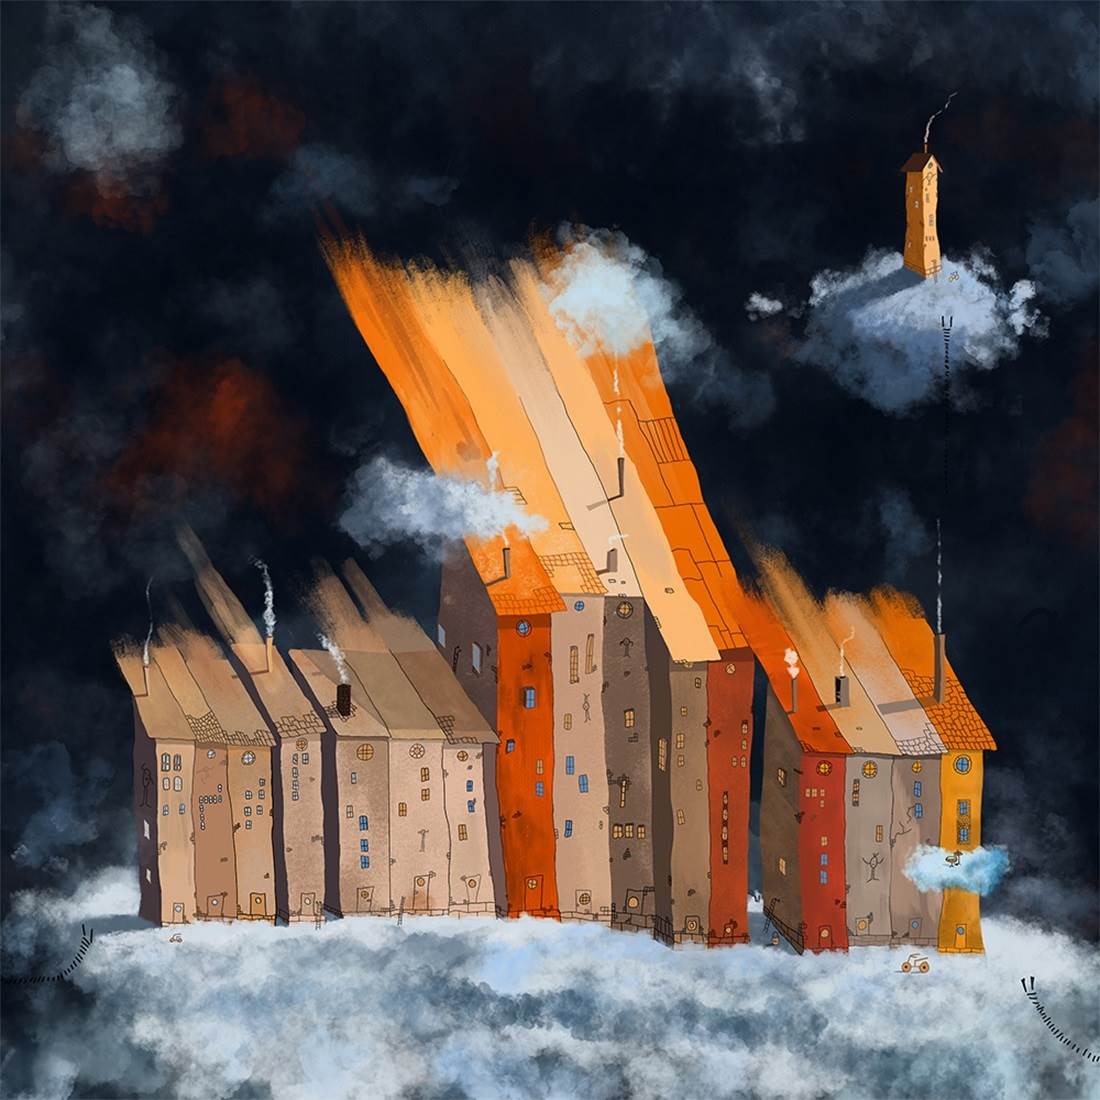 Cloud storage in village Gumboda, original Paysage Numérique Dessin et illustration par Per Nylén